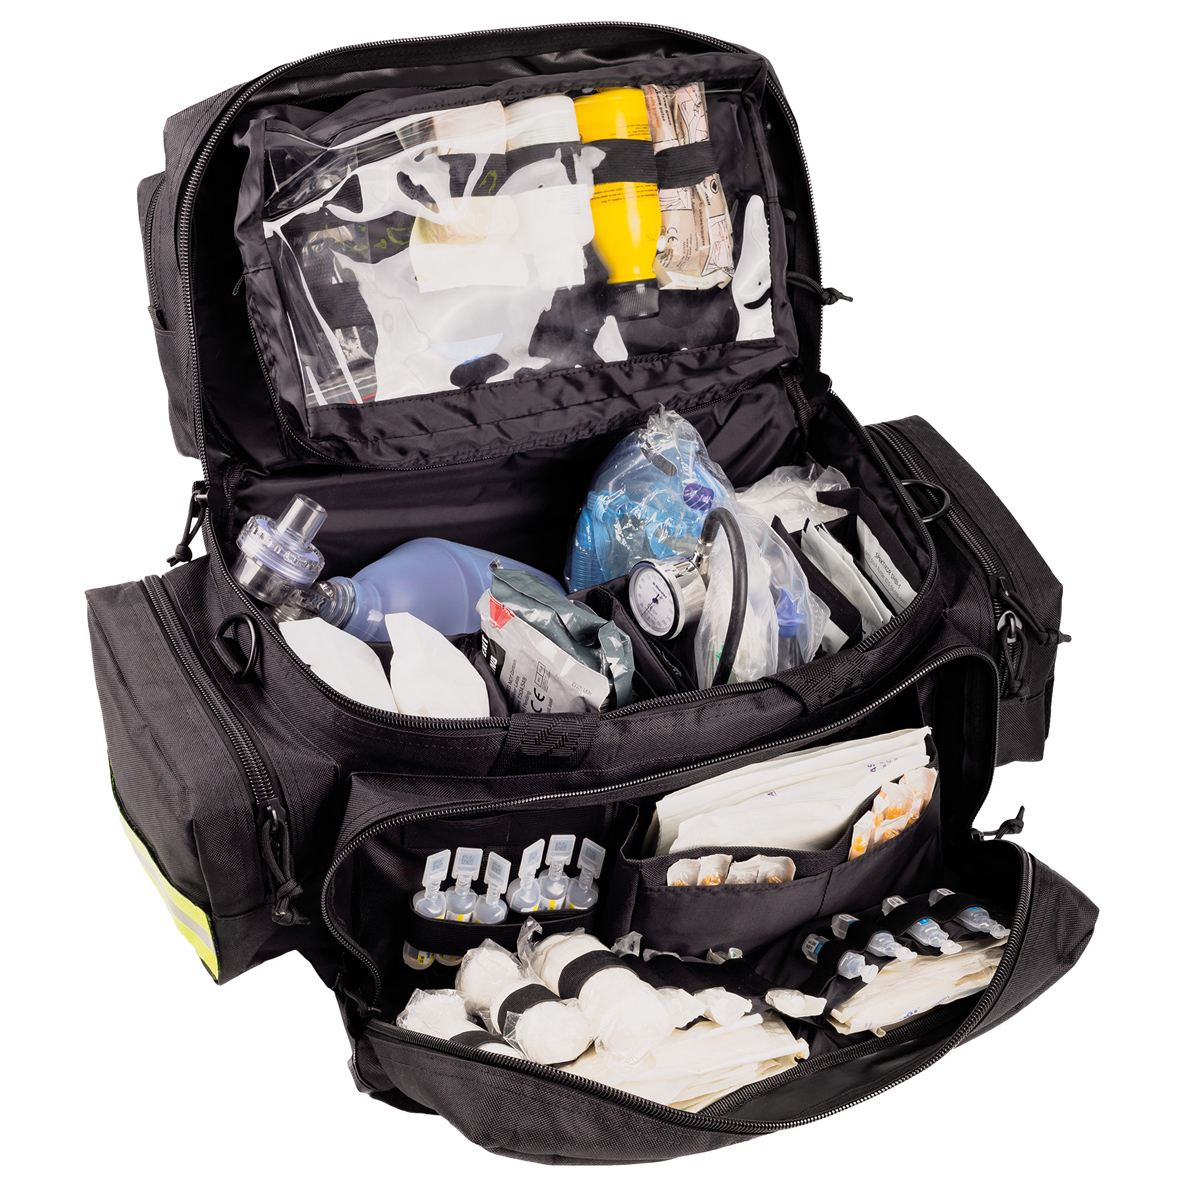 Emergency's GREAT CAPACITY Notfalltasche Schwarz - Notfalltasche mit großzügigem Platzangebot für vielfältige Einsatzbereiche. 55 x 34 x 32 cm.